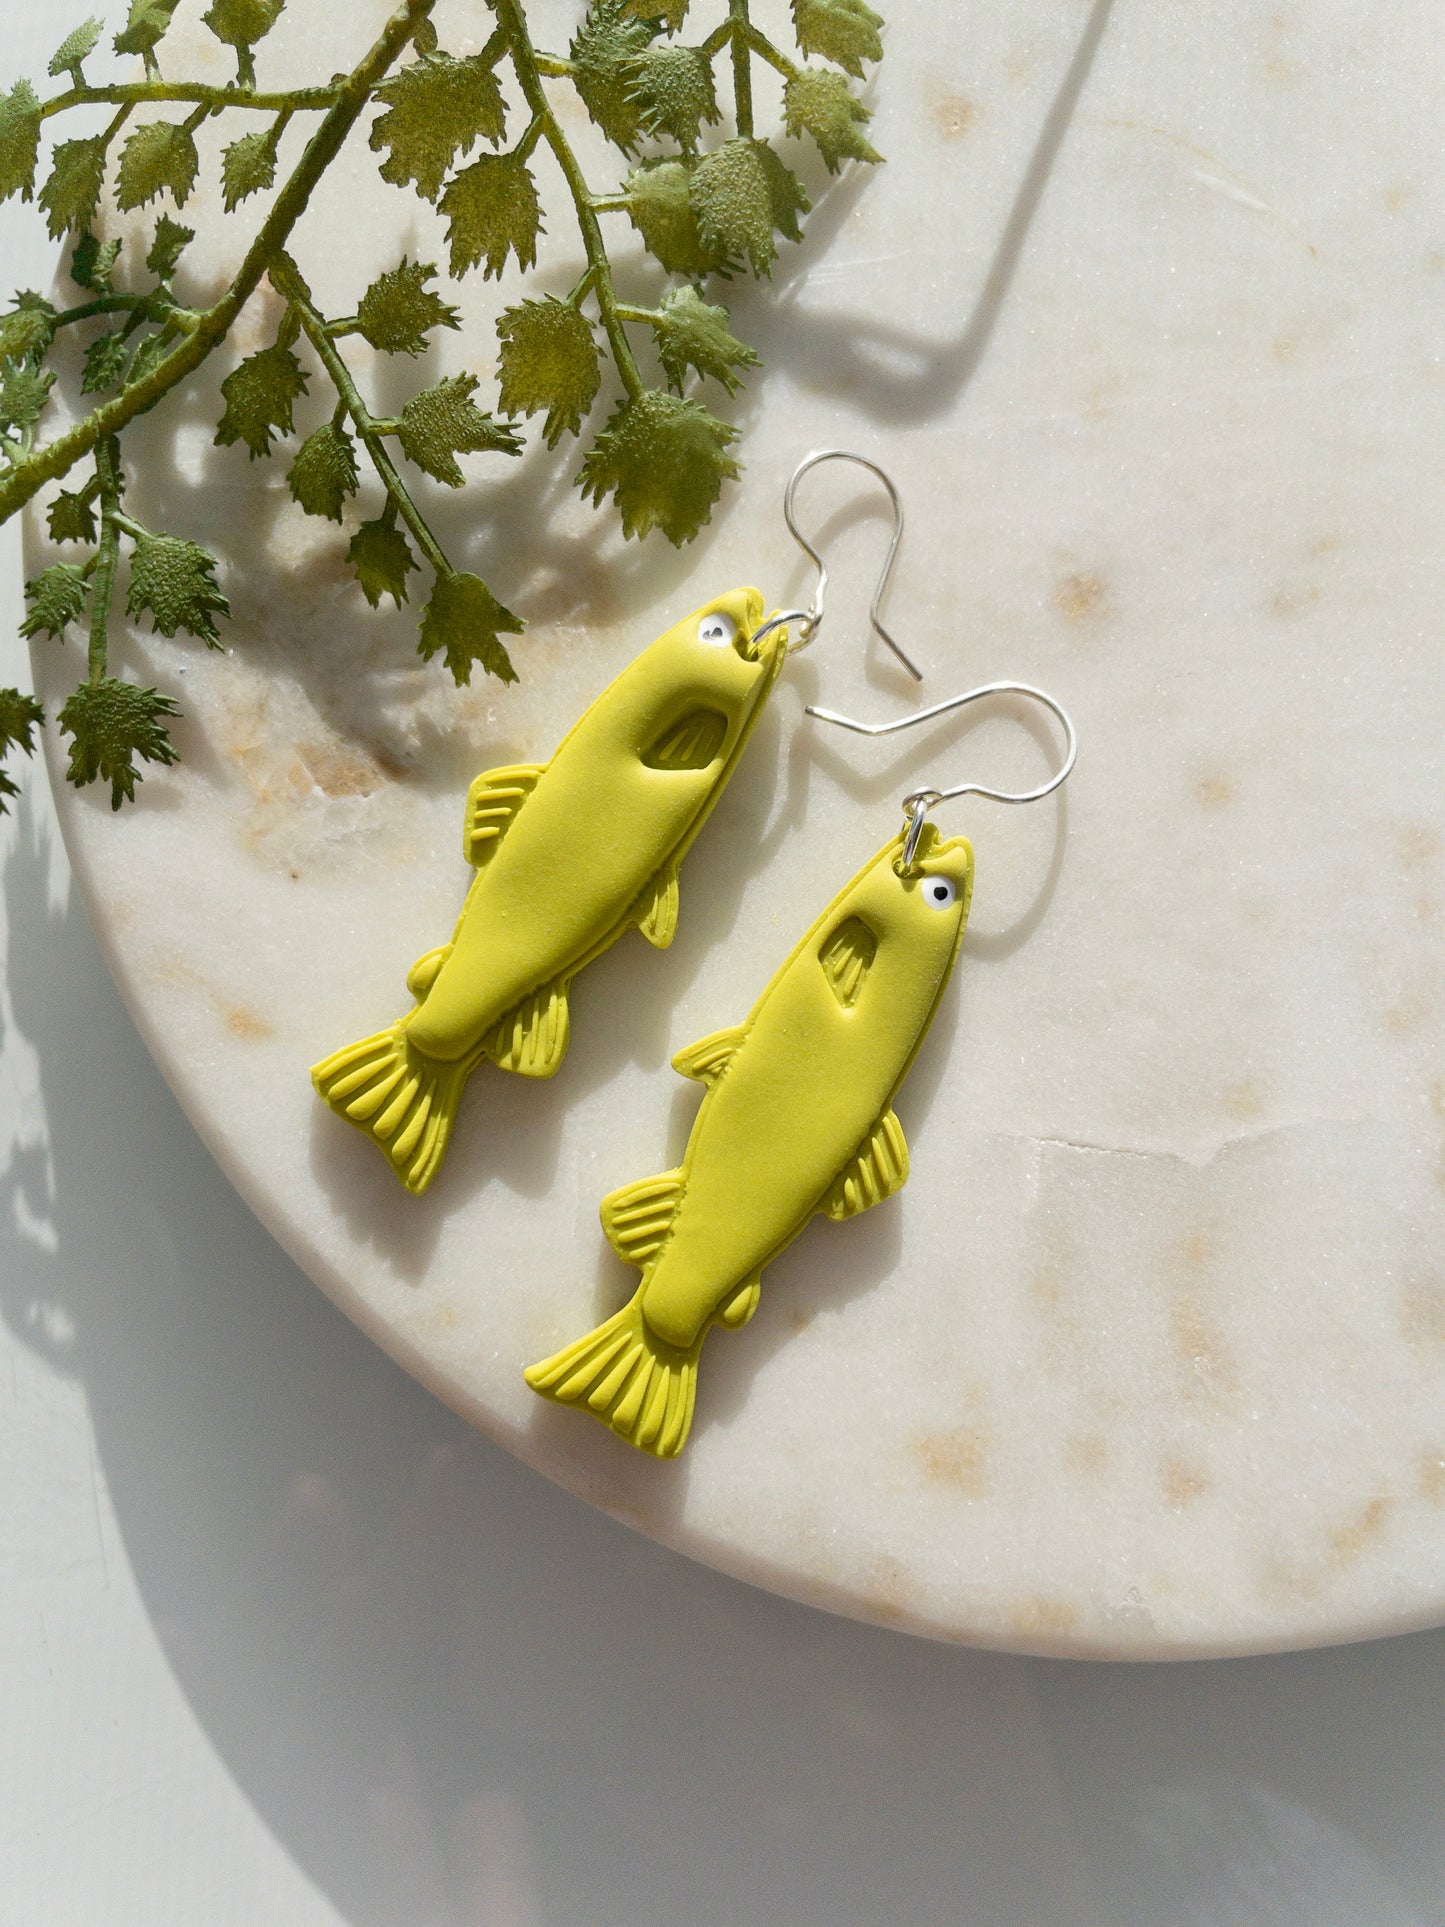 clay earrings | Trout fish earrings